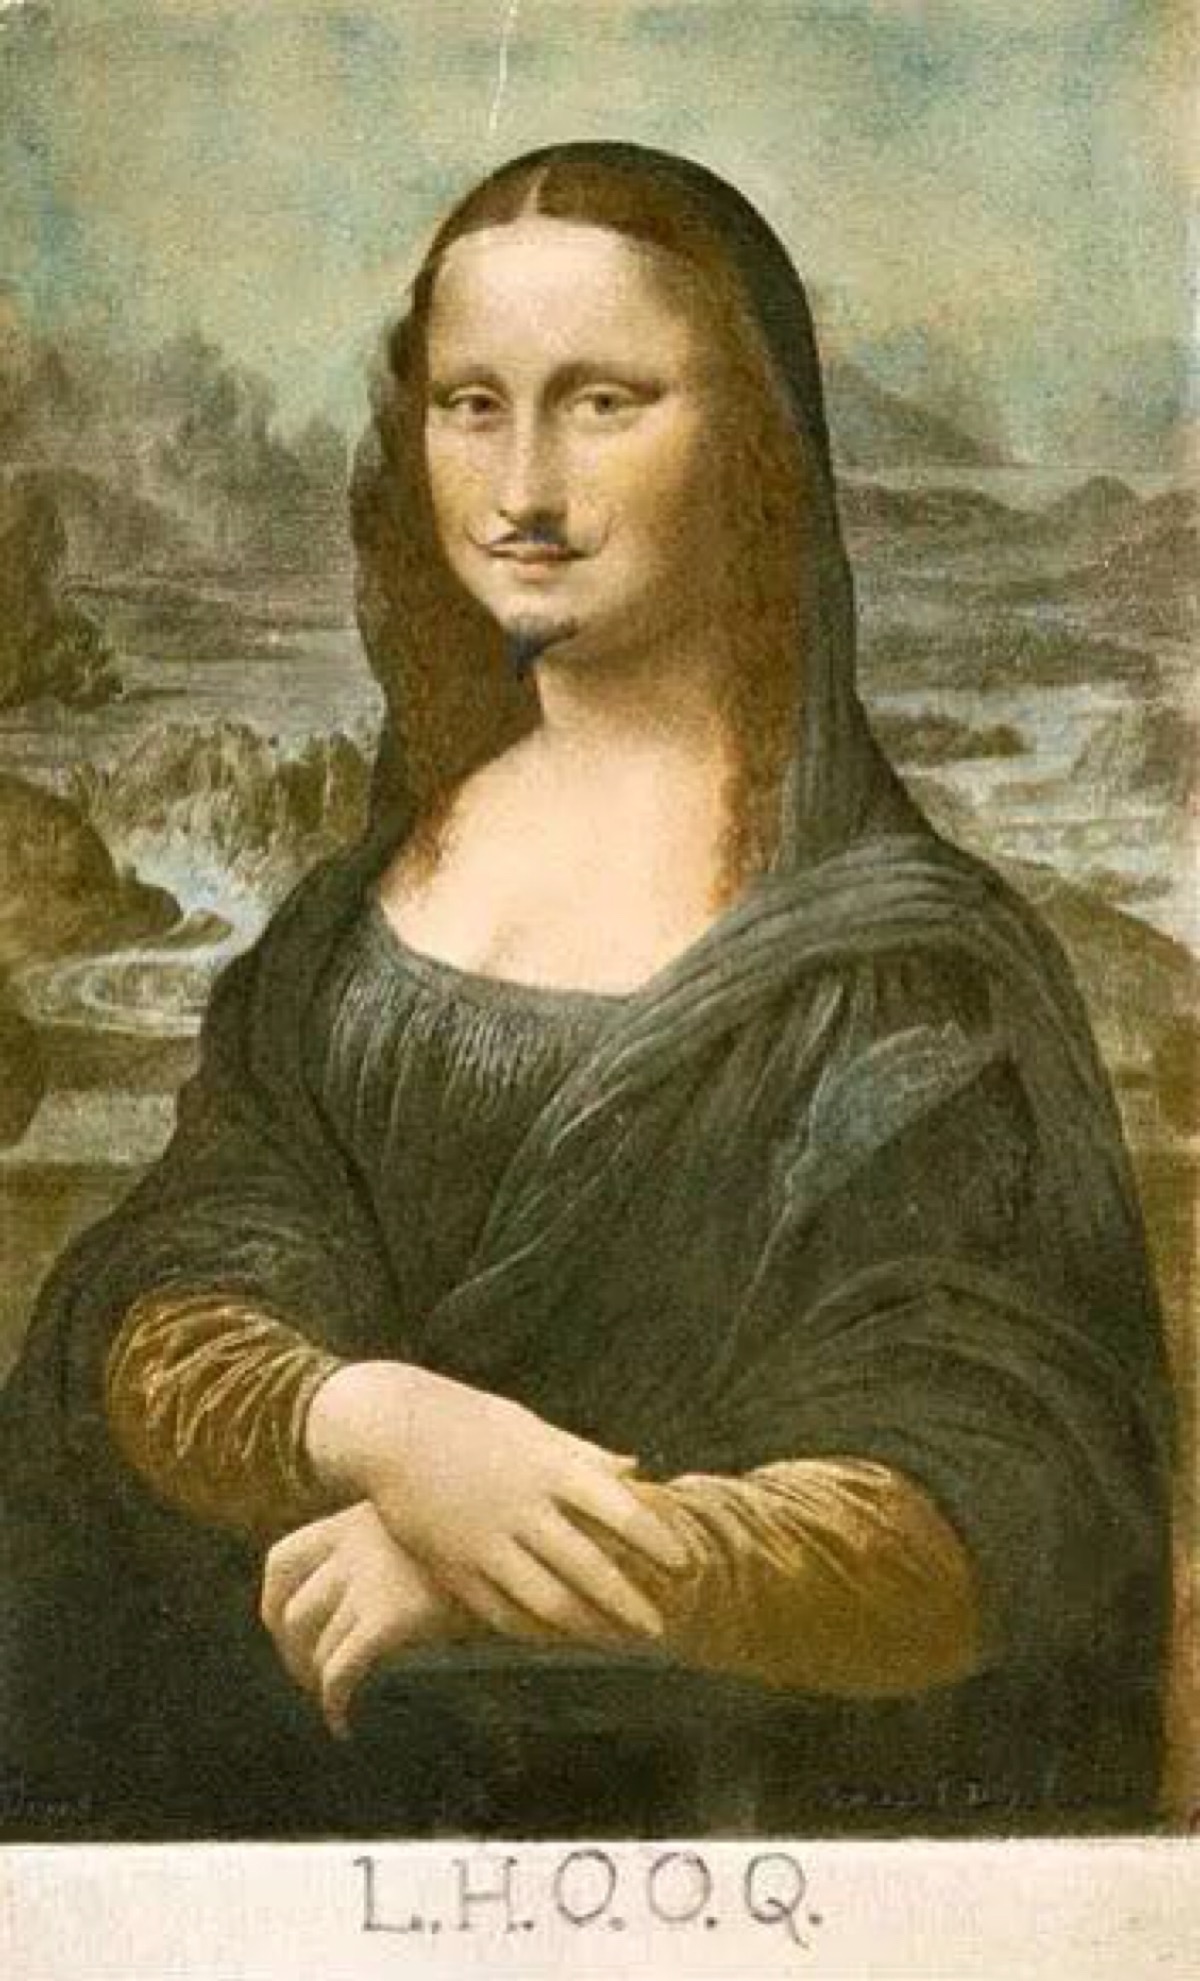 Mona Lisa, Leonardo da Vinci, opis obrazu, ciekawostki, kulisy sławy ...